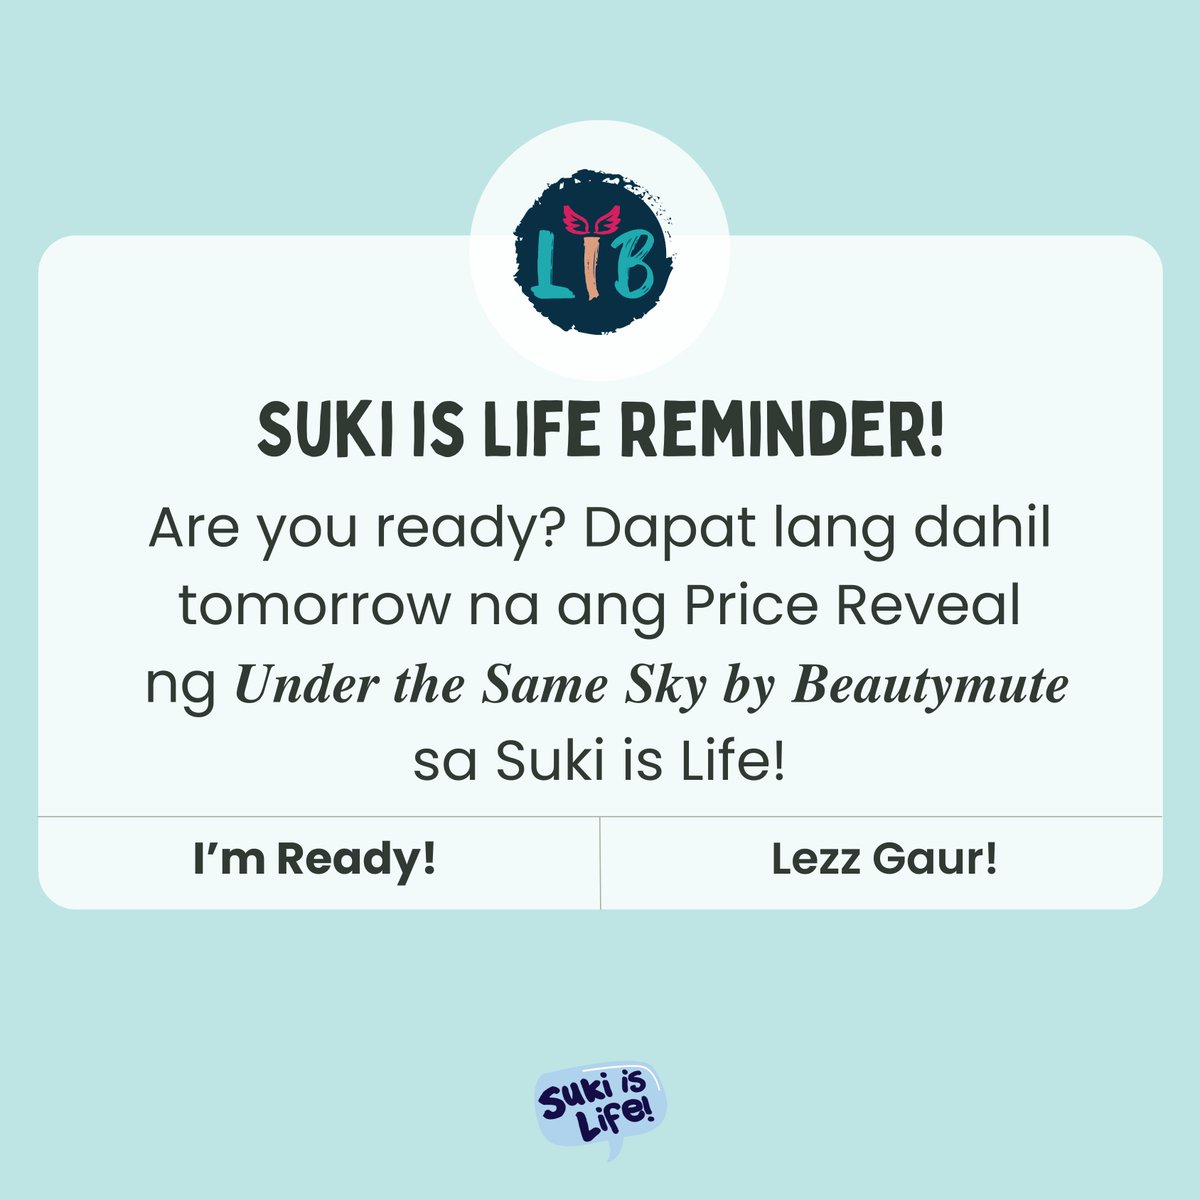 Are you ready? Dapat lang dahil tomorrow na ang Price Reveal ng 𝑼𝒏𝒅𝒆𝒓 𝒕𝒉𝒆 𝑺𝒂𝒎𝒆 𝑺𝒌𝒚 𝒃𝒚 𝑩𝒆𝒂𝒖𝒕𝒚𝒎𝒖𝒕𝒆 sa Suki is Life! See you there! 💙✨ #LIBOfficial